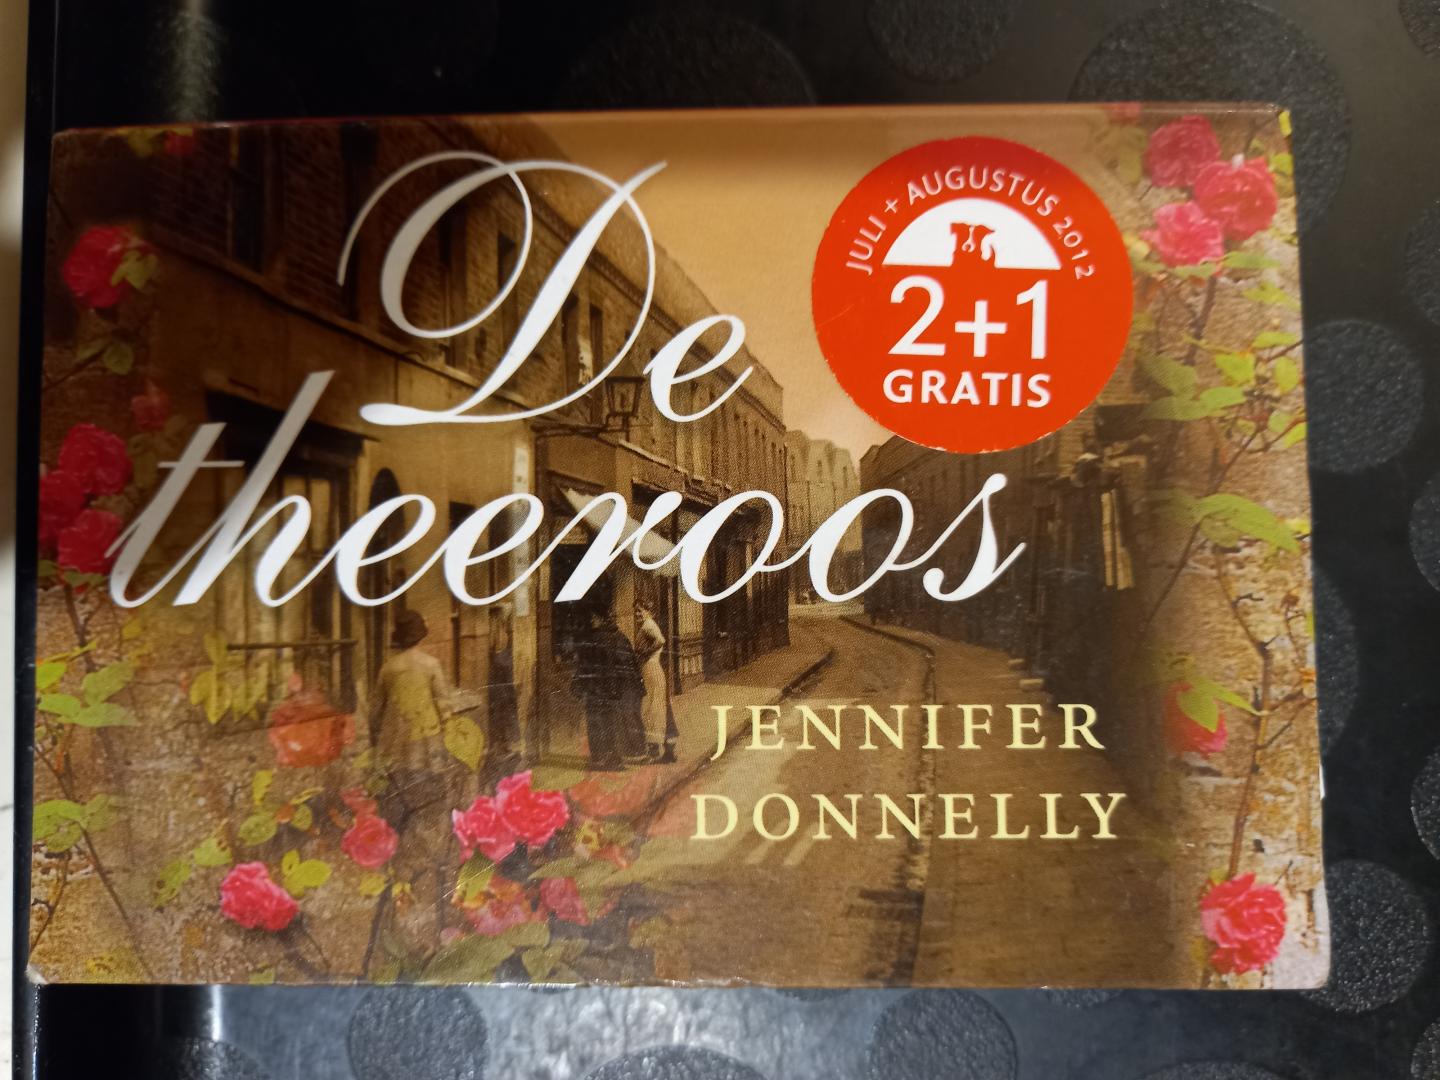 Donnelly, Jennifer - De Theeroos